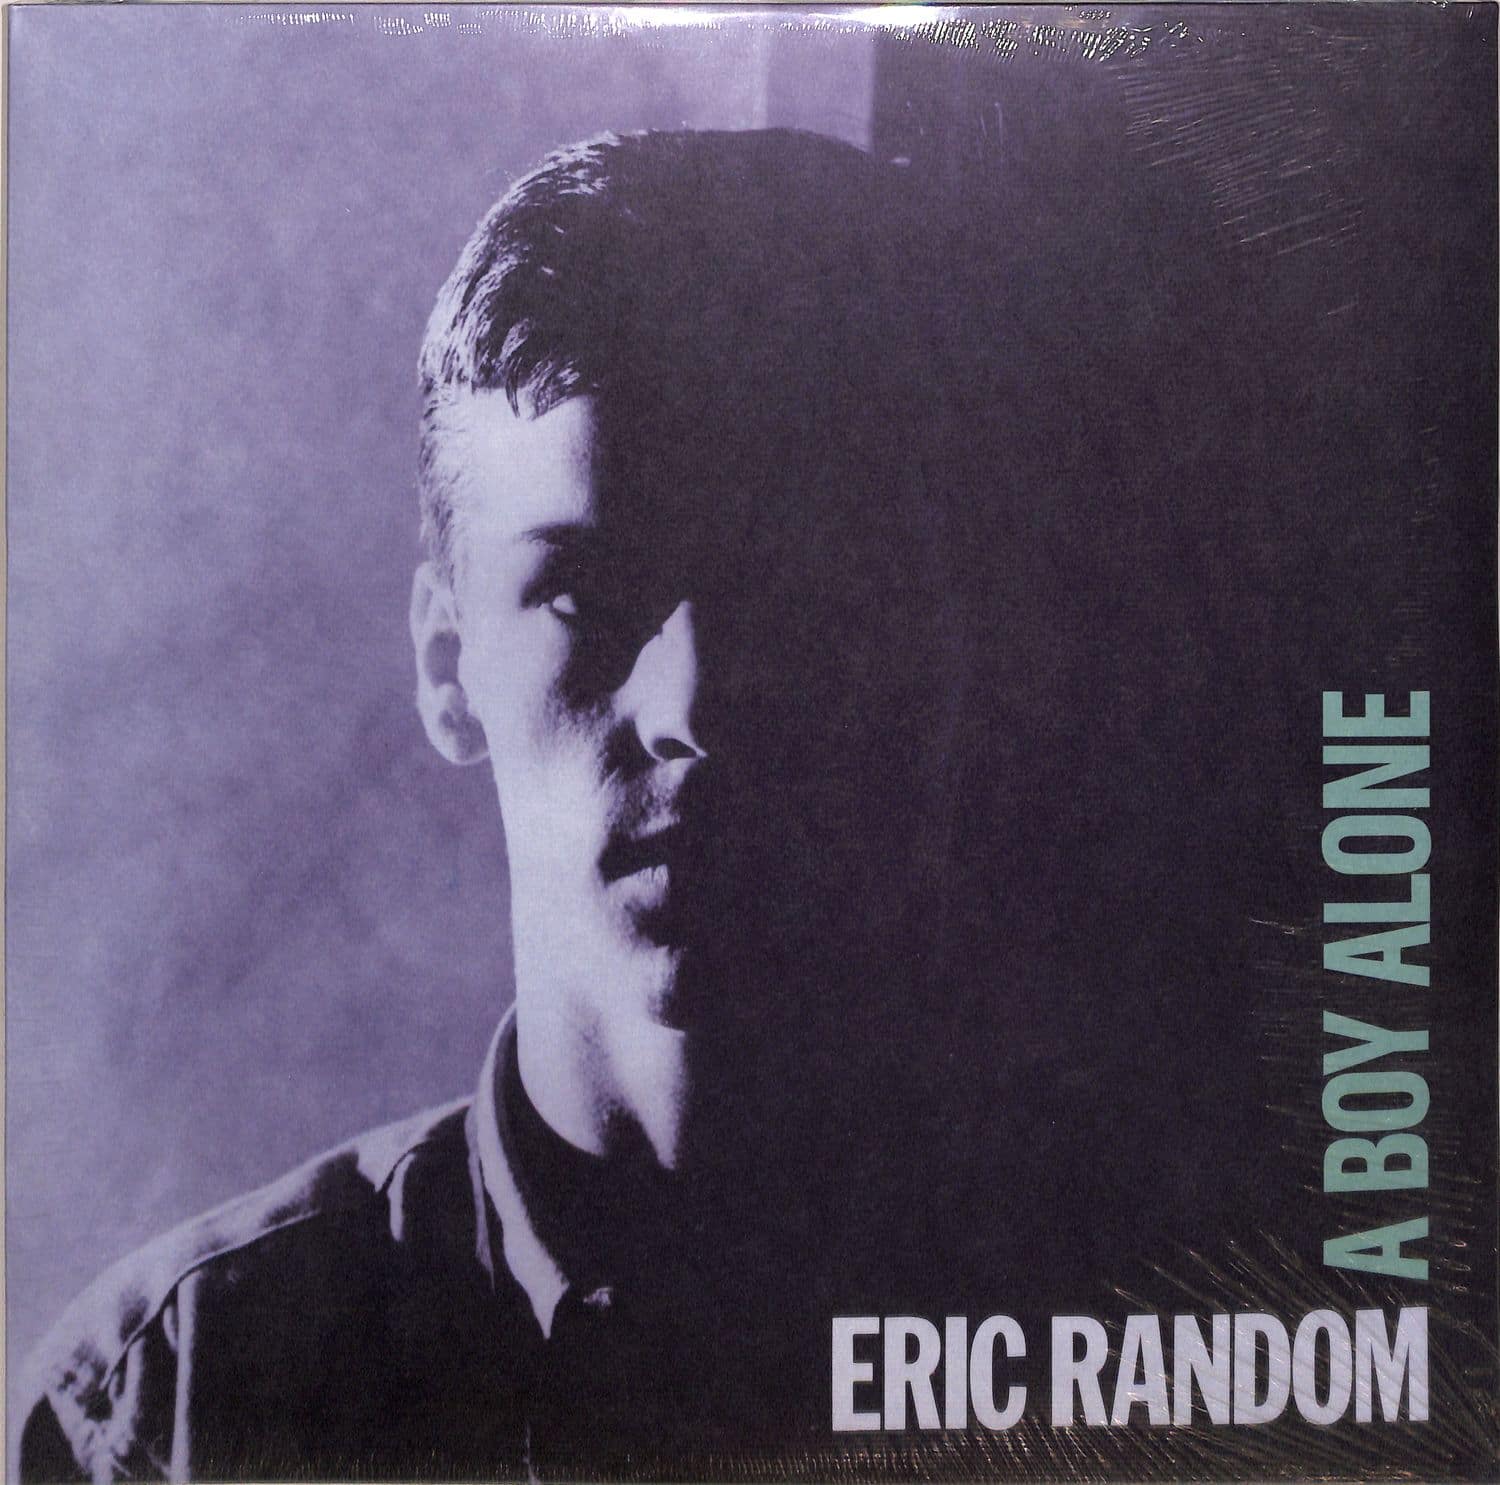 Eric Random - A BOY ALONE 